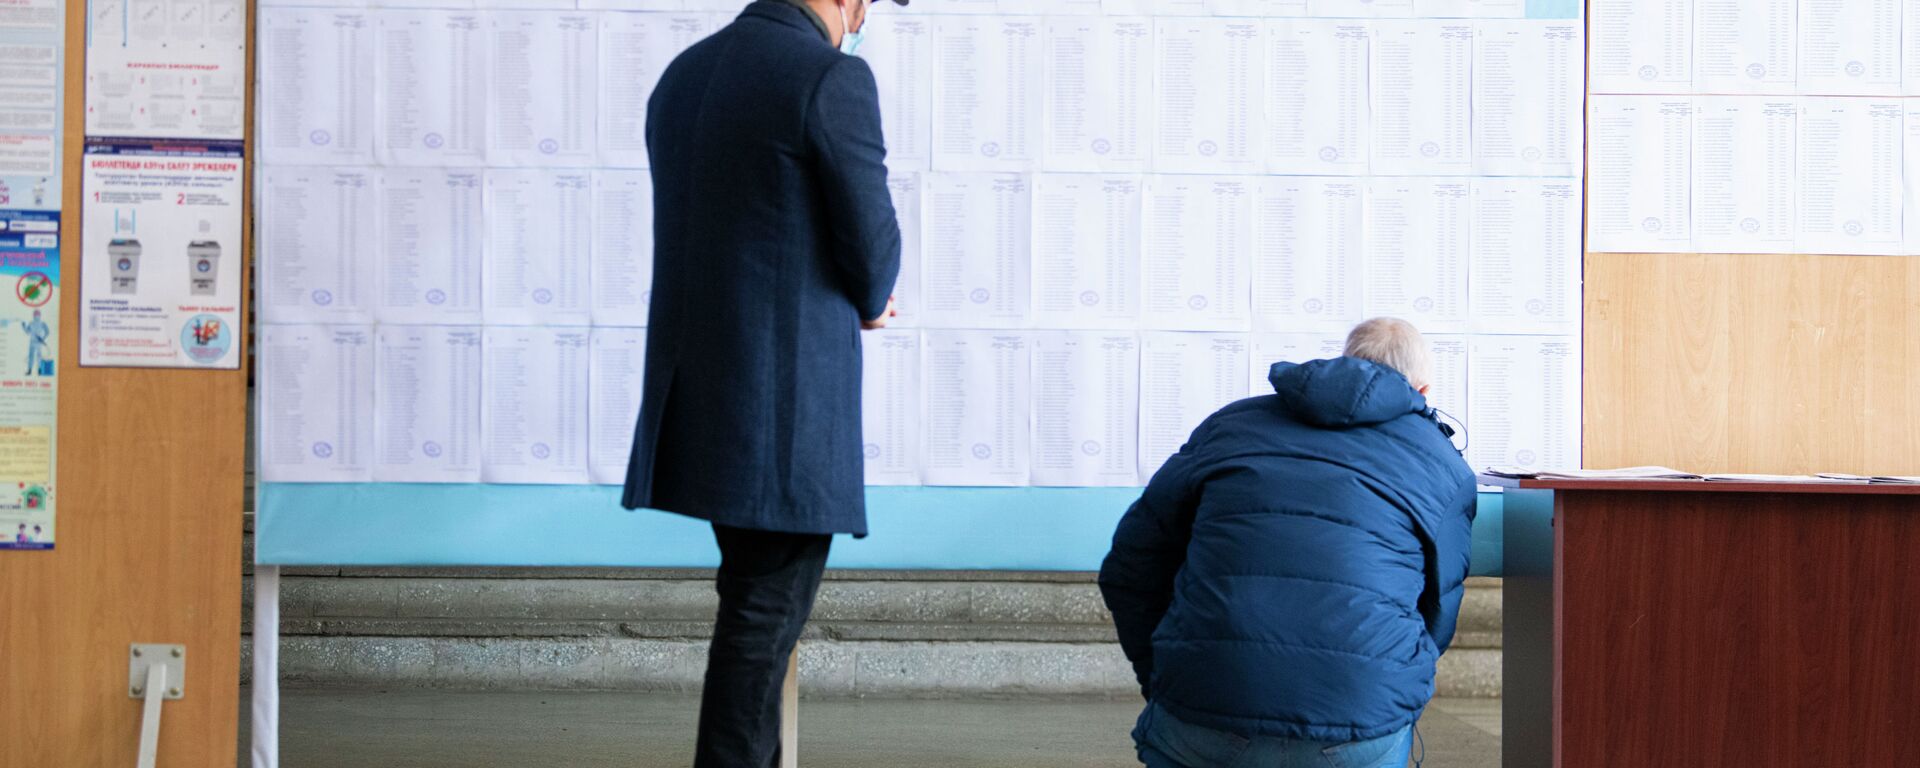 Люди участвуют на выборах депутатов Жогорку Кенеша VII созыва в избирательном участке №1213 в Бишкеке. 28 ноября 2021 года - Sputnik Кыргызстан, 1920, 28.11.2021